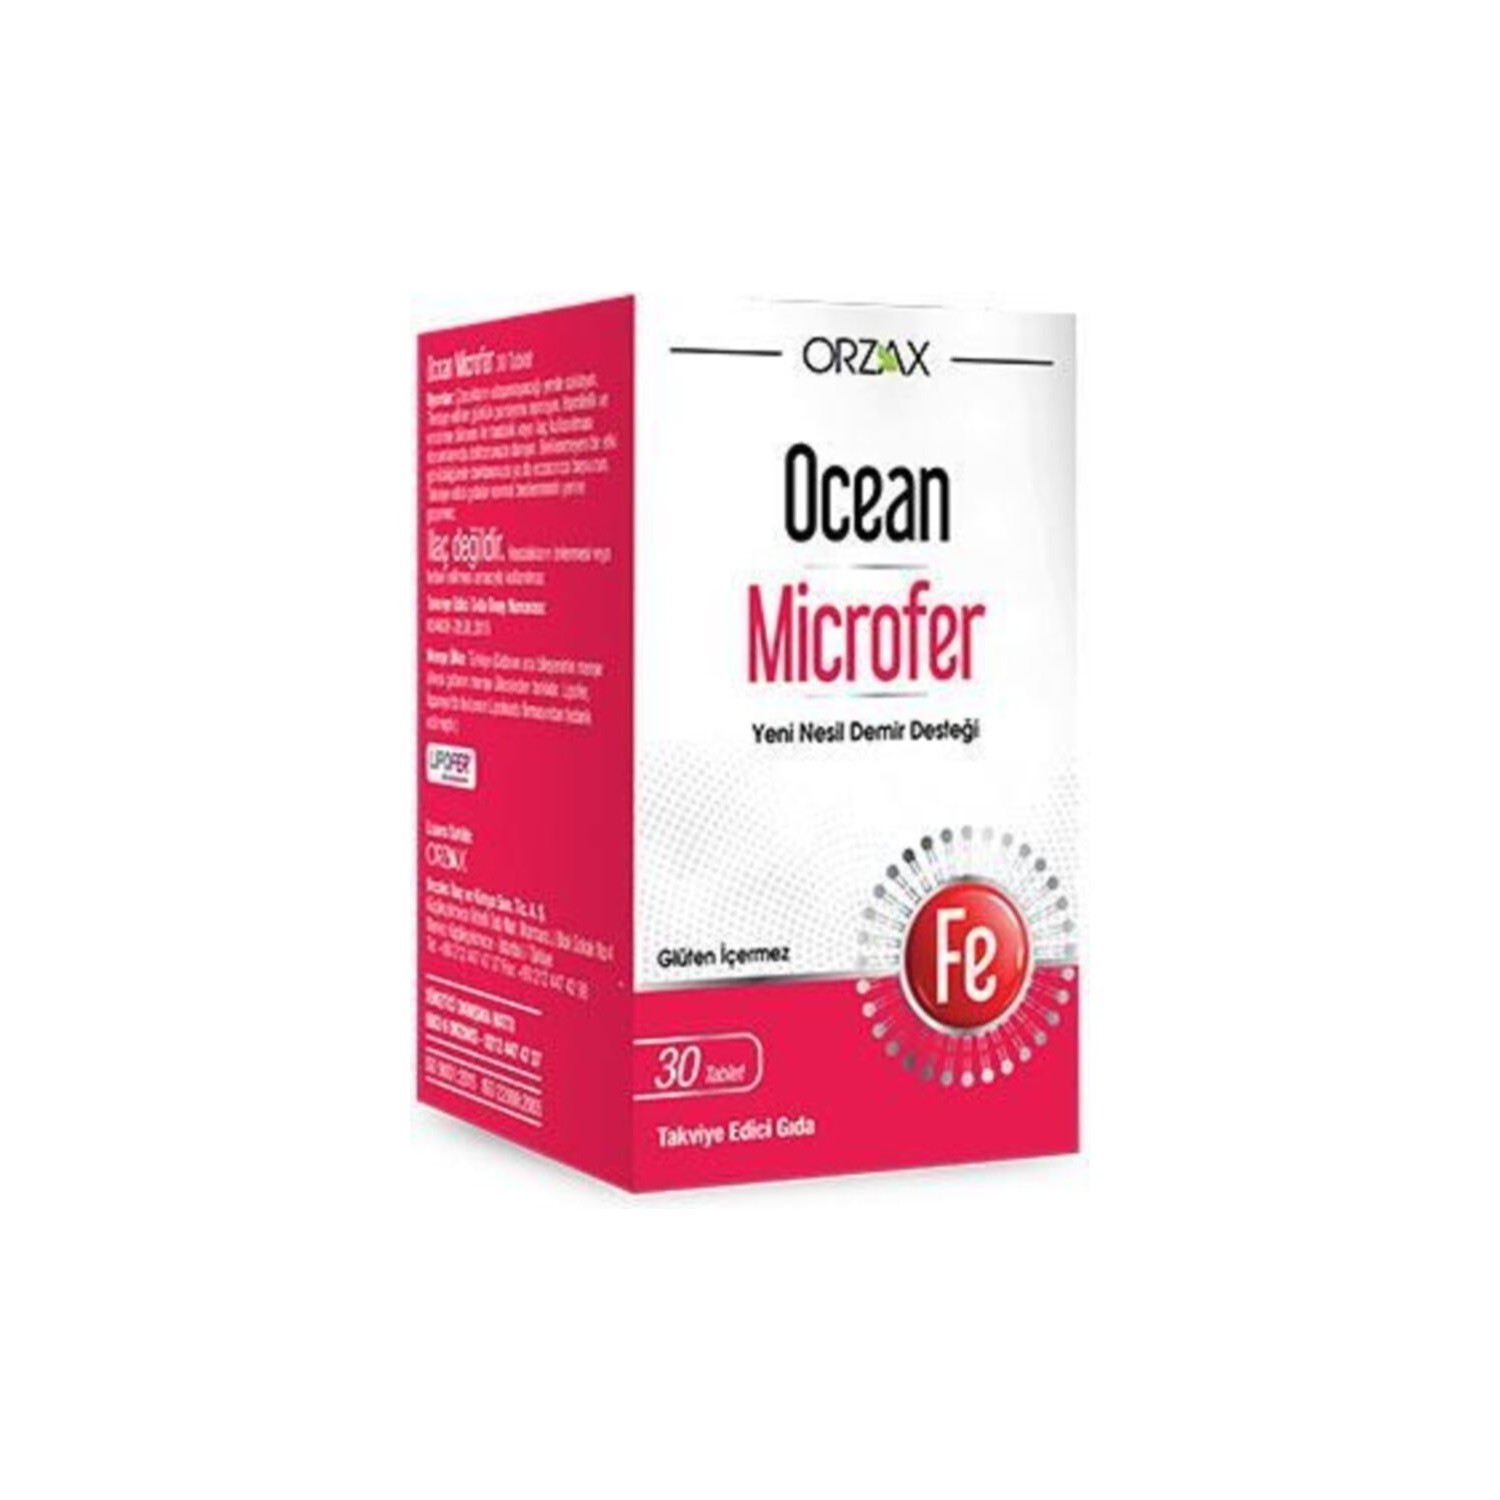 цена Пищевая добавка Orzax Ocean Microfer, 30 таблеток